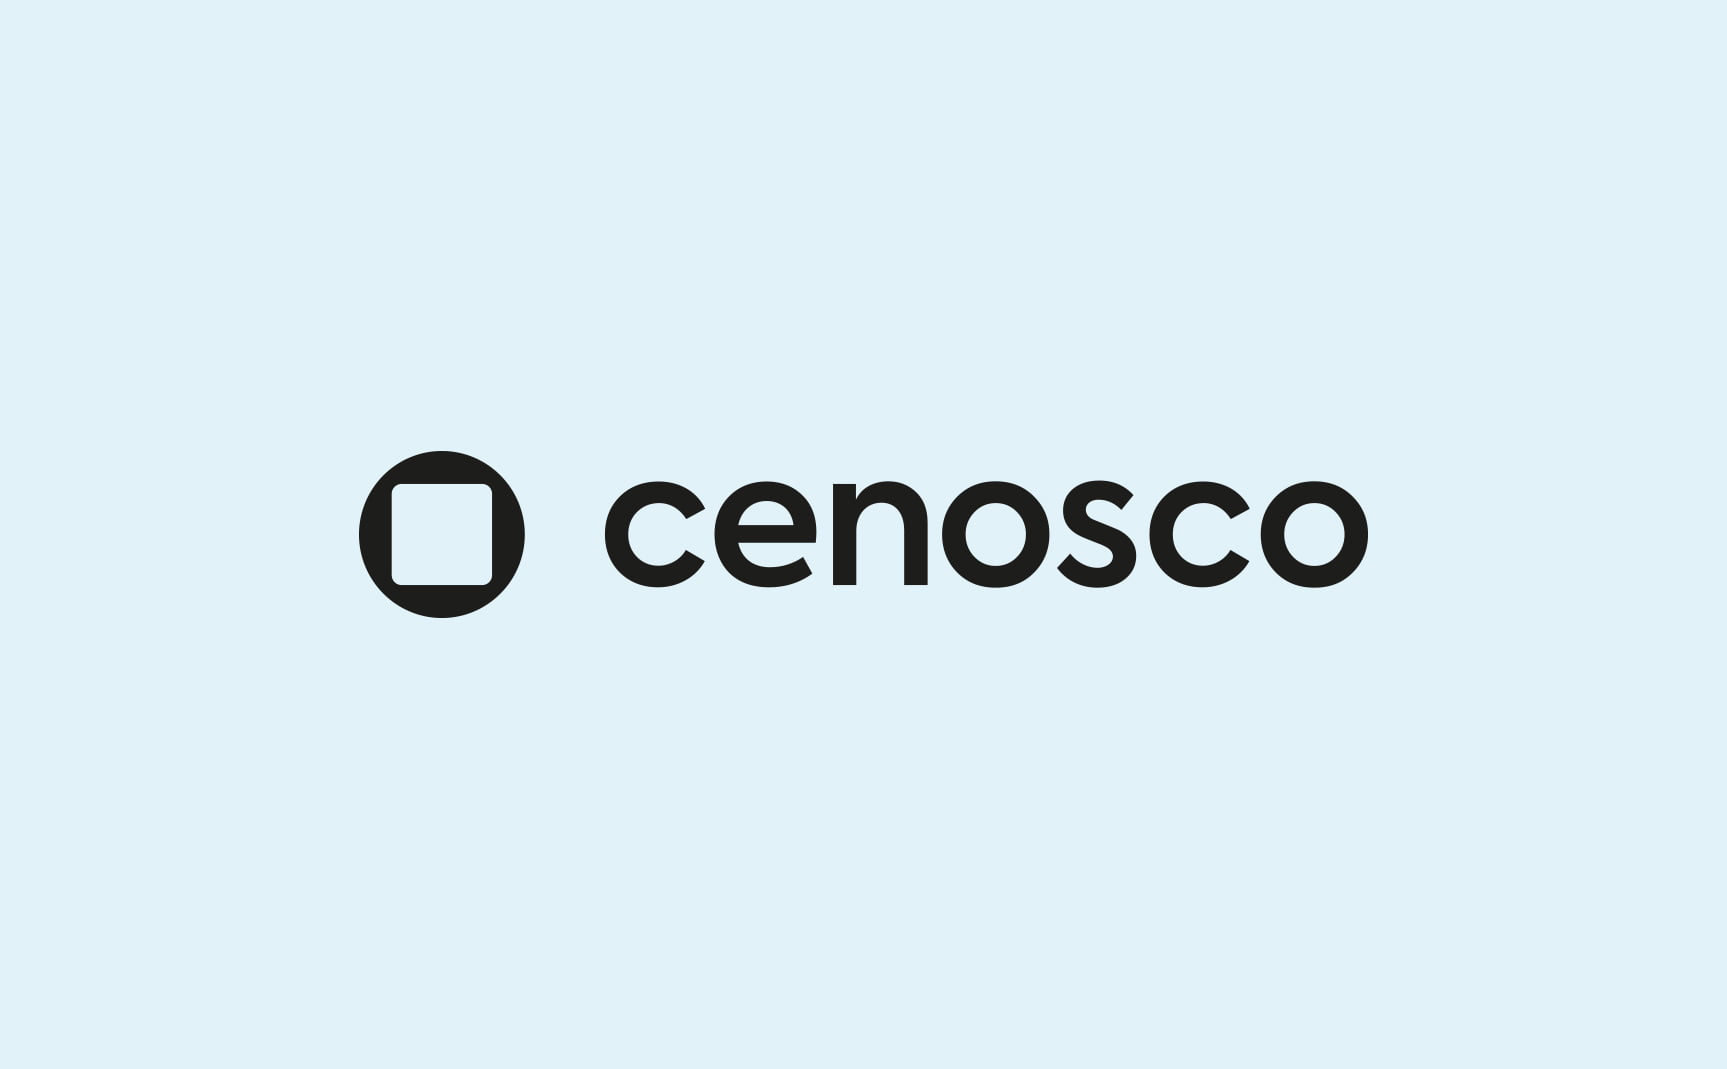 new black cenosco logo on a light blue background